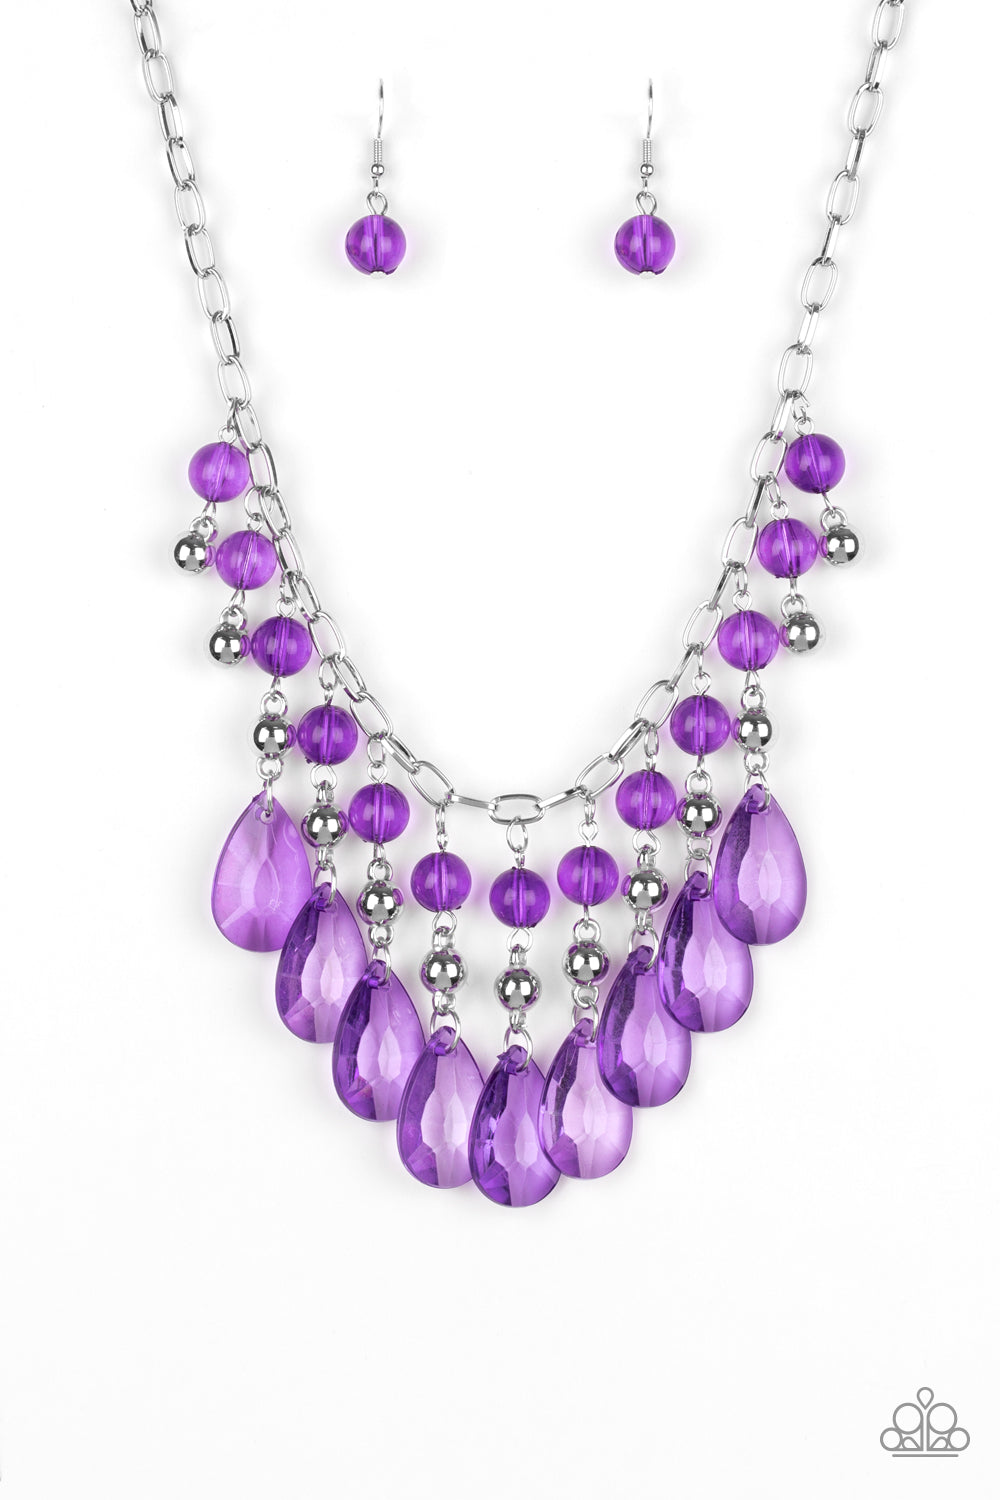 Beauty School Drop Out Purple Paparazzi Necklaces Cashmere Pink Jewels - Cashmere Pink Jewels & Accessories, Cashmere Pink Jewels & Accessories - Paparazzi